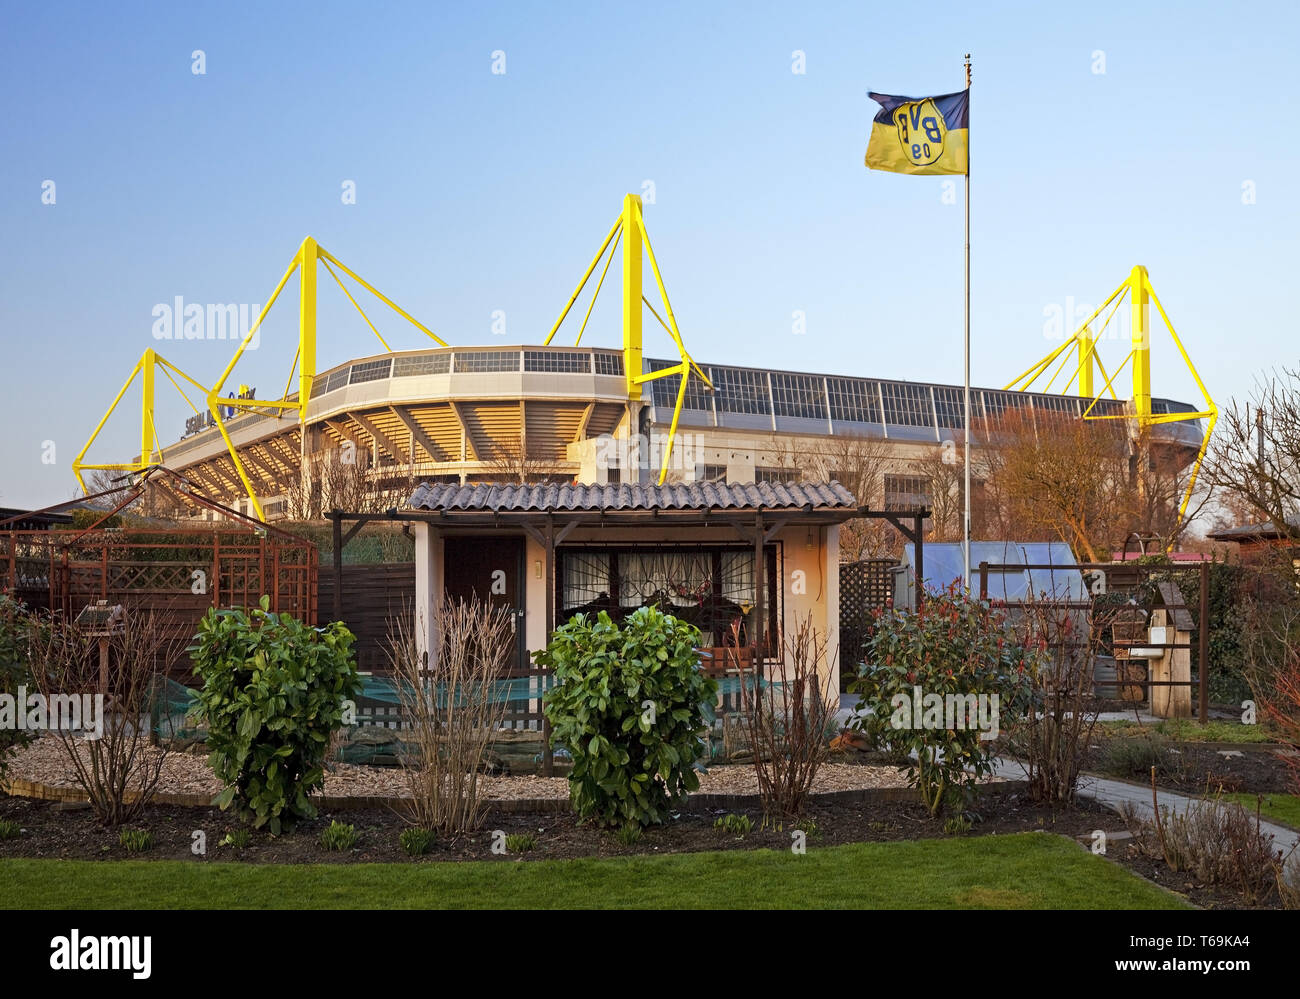 Compartir el jardín de enfrente del estadio de fútbol Signal Iduna Park de BVB, Dortmund, Alemania Foto de stock